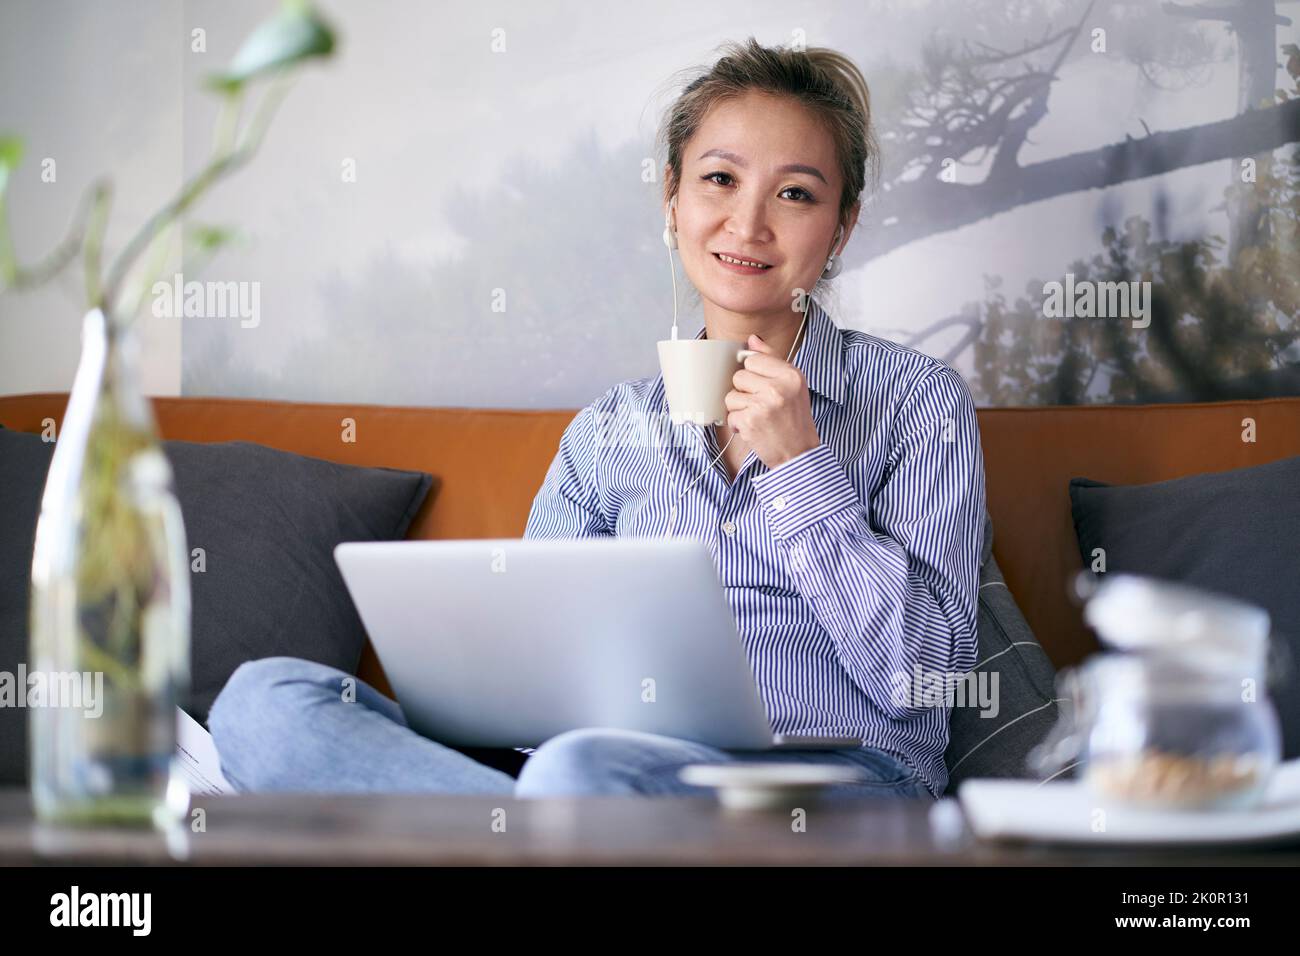 mujer asiática profesional madura que trabaja desde casa sentada en el sofá con el ordenador portátil sosteniendo una taza de café mirando la cámara Foto de stock